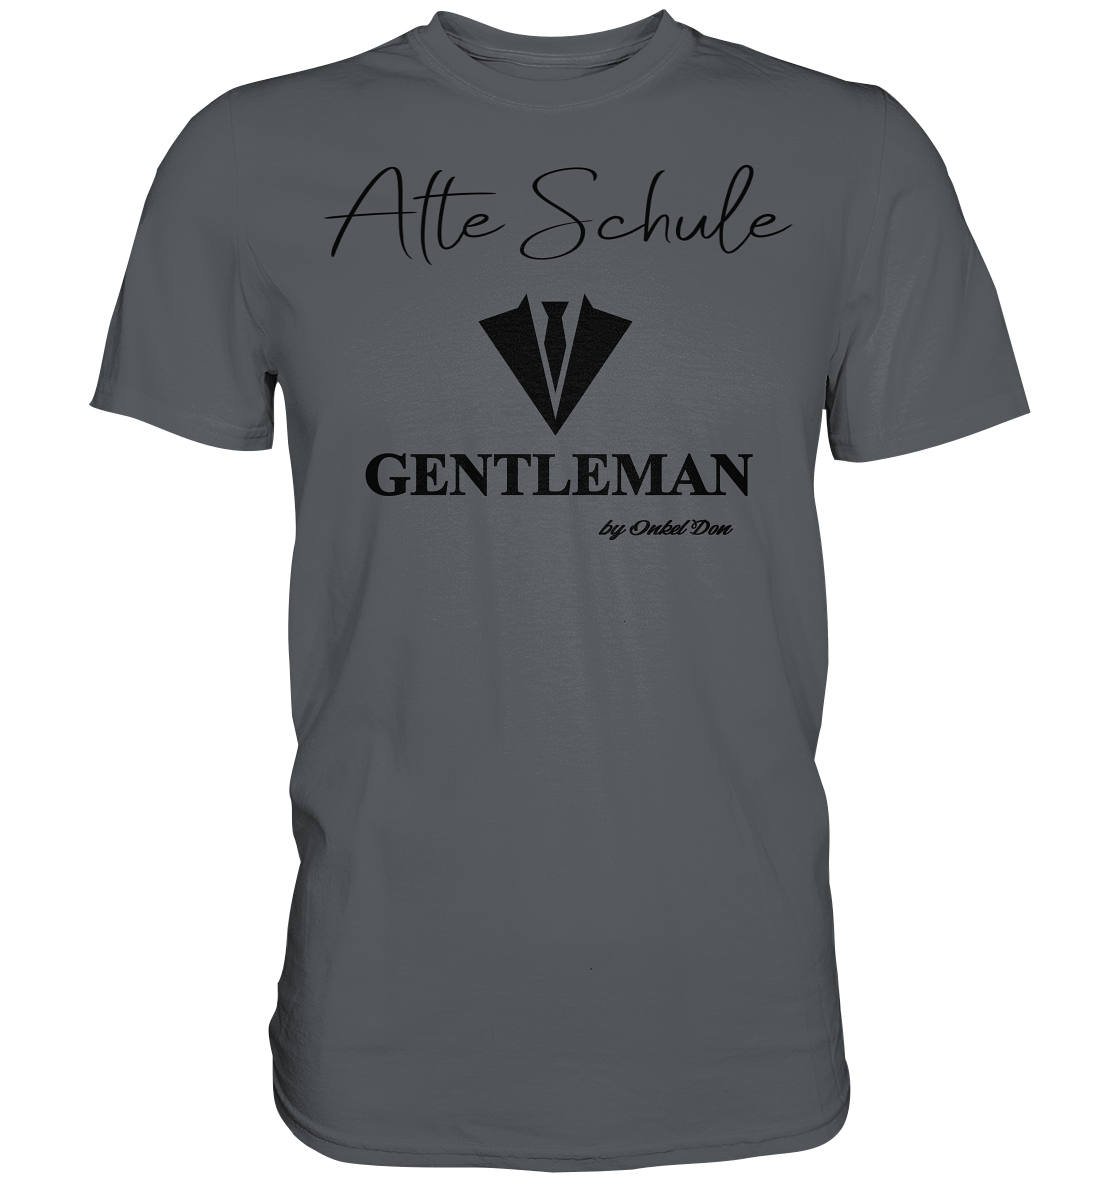 Gentleman - Herren Shirt - Onkel Don